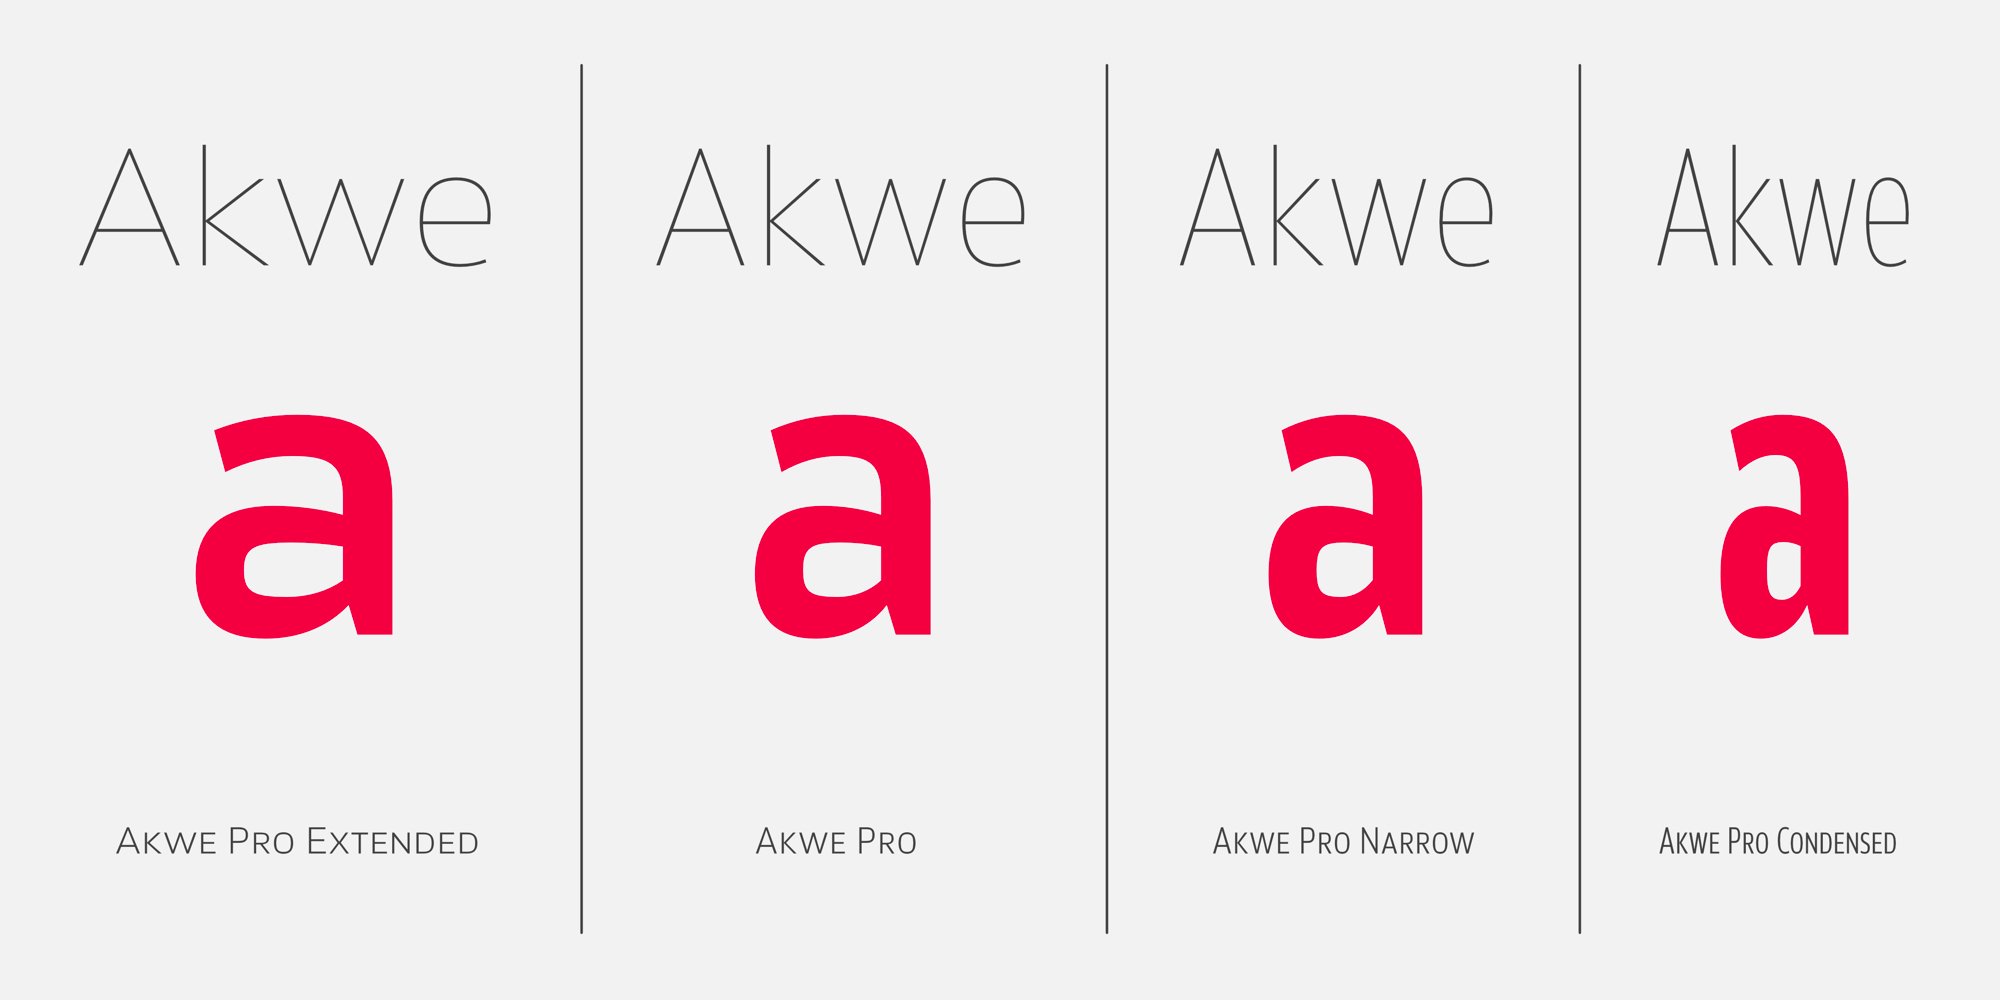 Akwe Pro